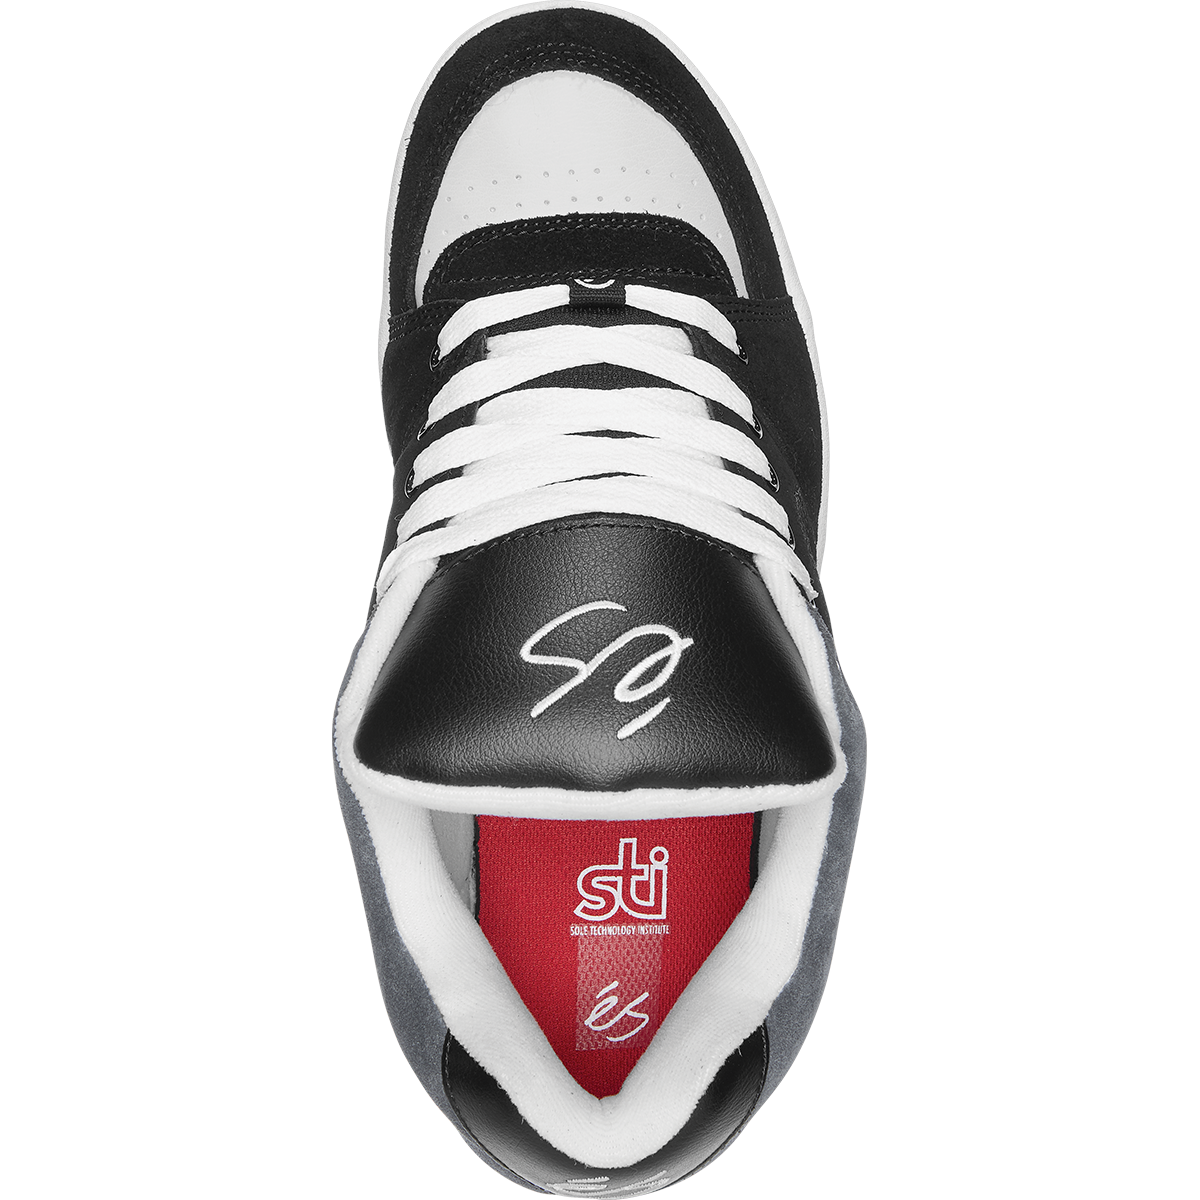 Black/Silver OG Accel eS Skateboarding shoe Top